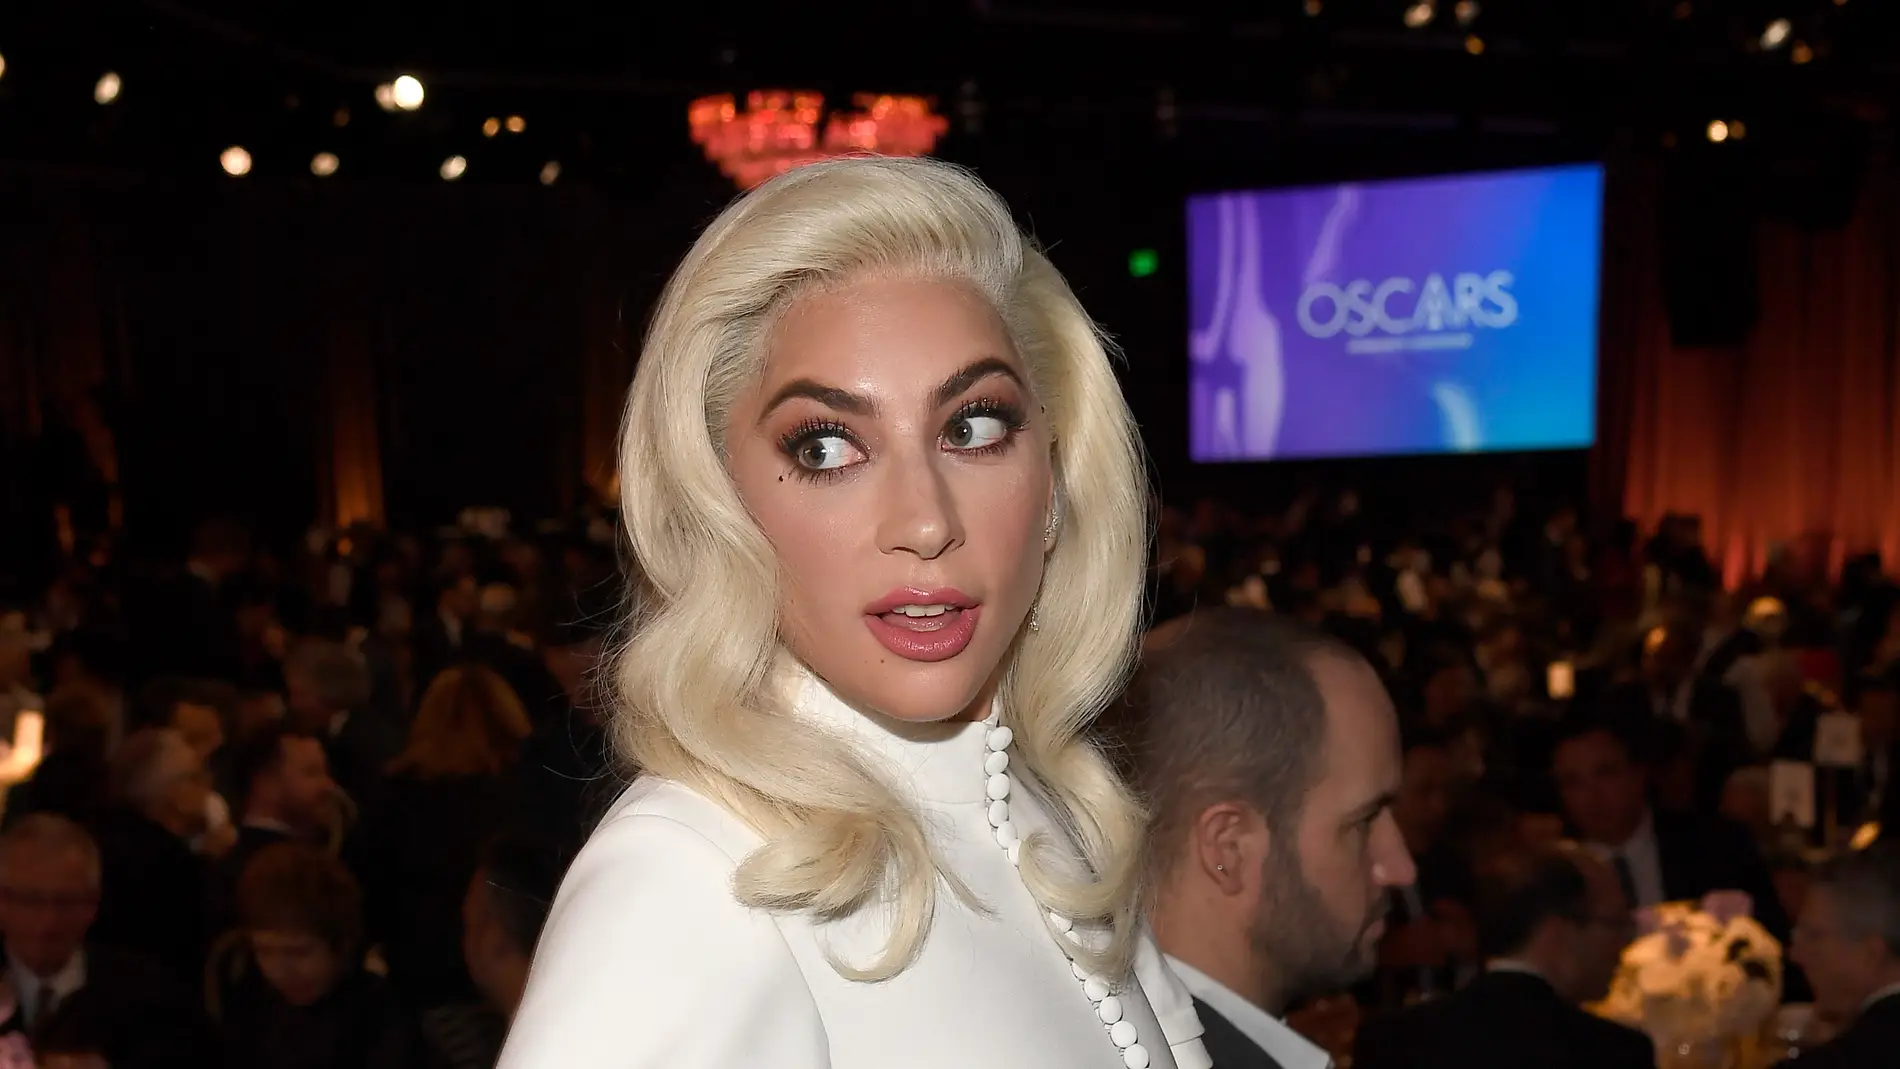 Lady Gaga en la comida de los nominados a los Oscar